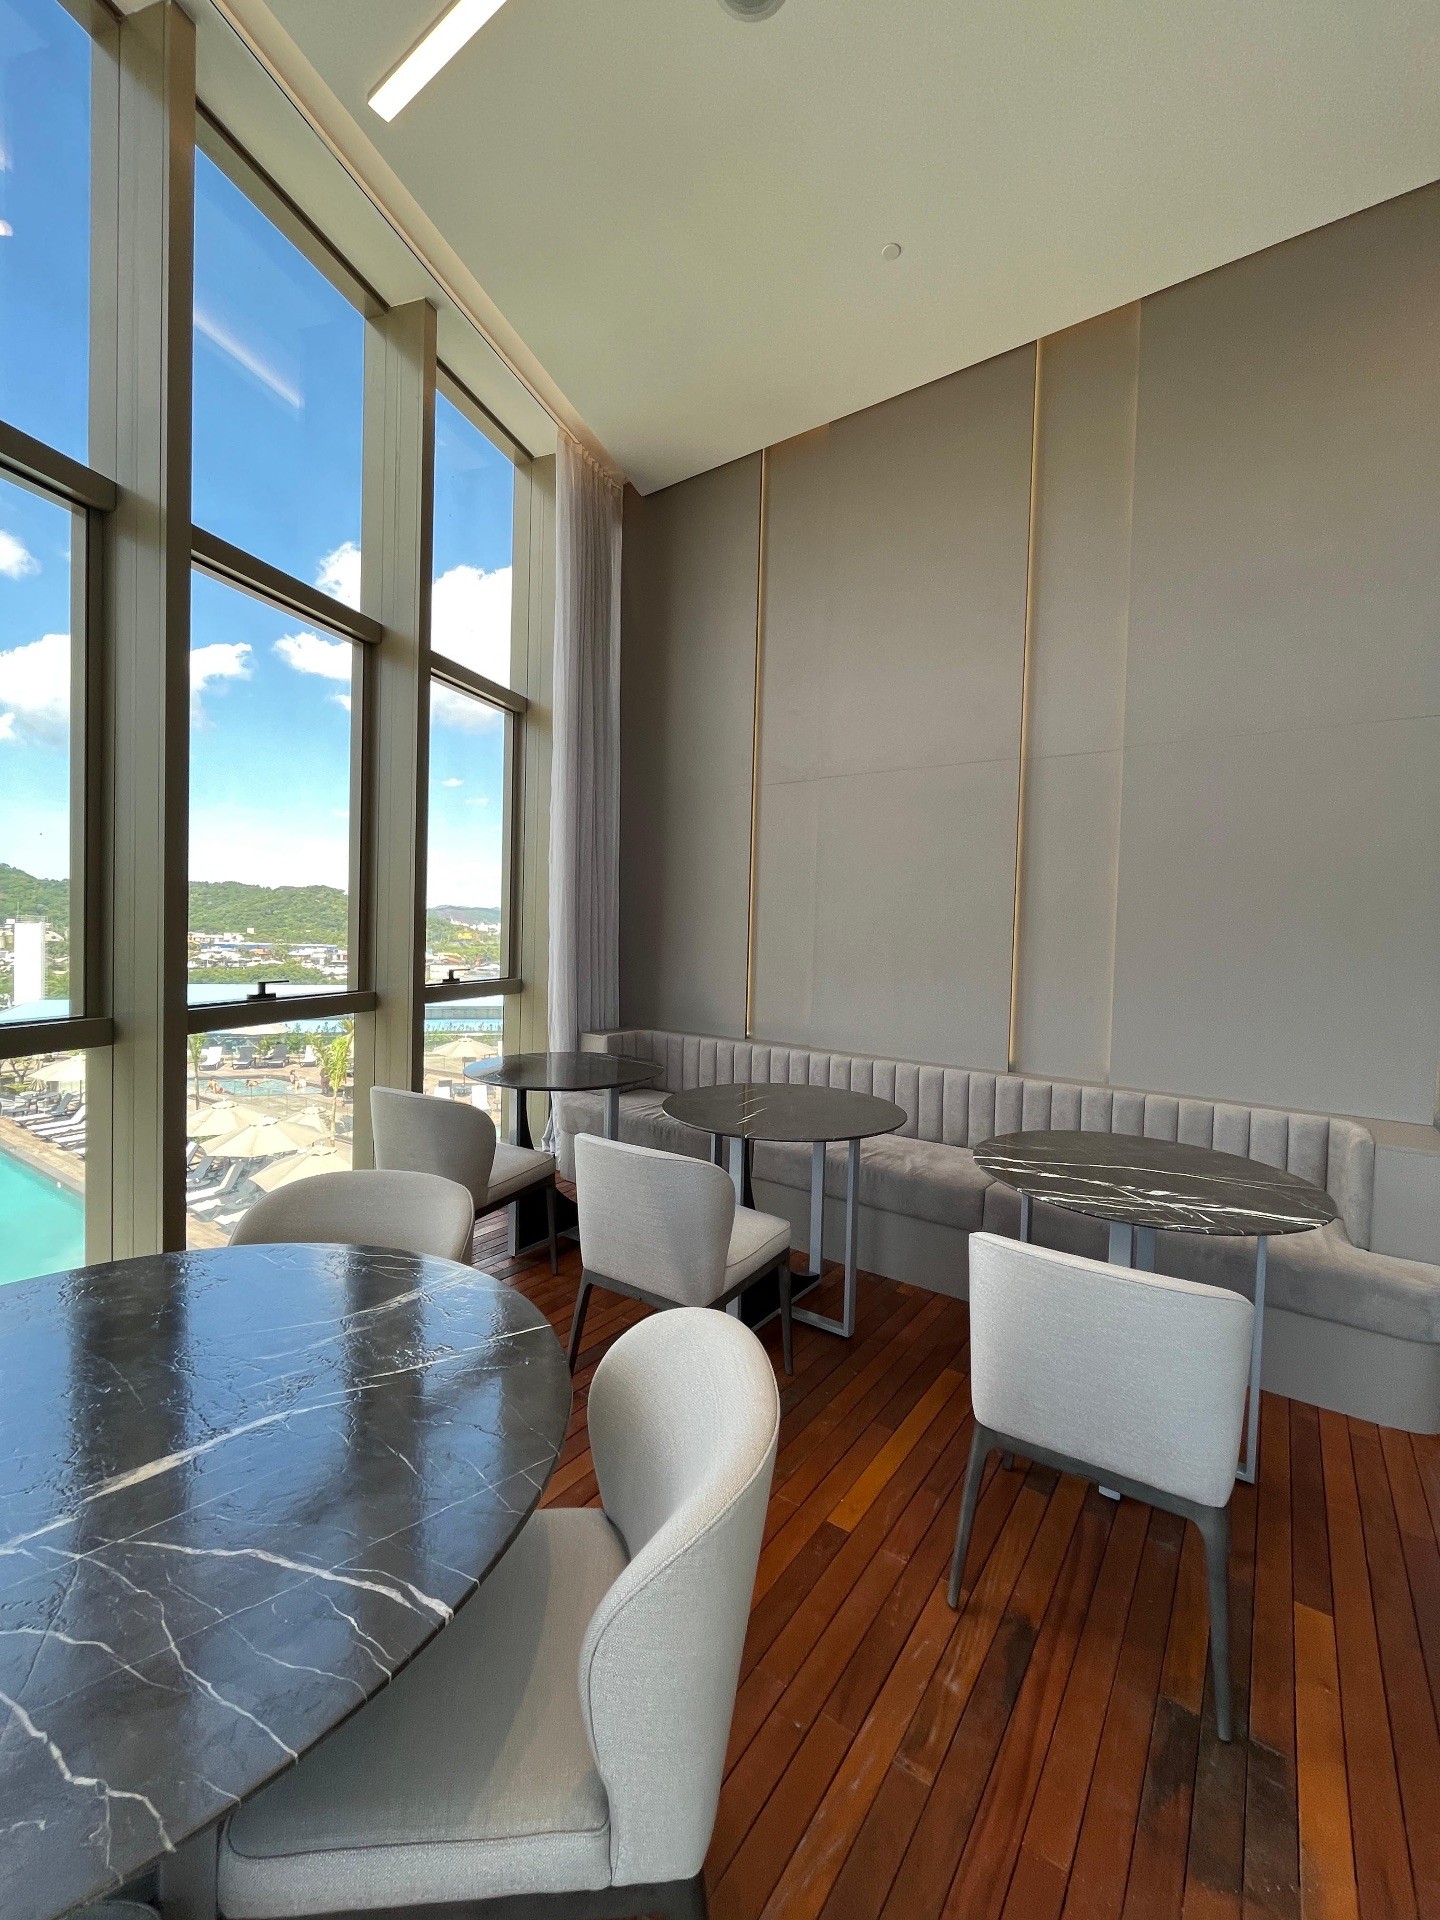 YACHTHOUSE, Apartamento finamente, mobiliado, equipado e decorado, andar alto torre 2, localizado na Barra Sul em Balneário Camboriú 